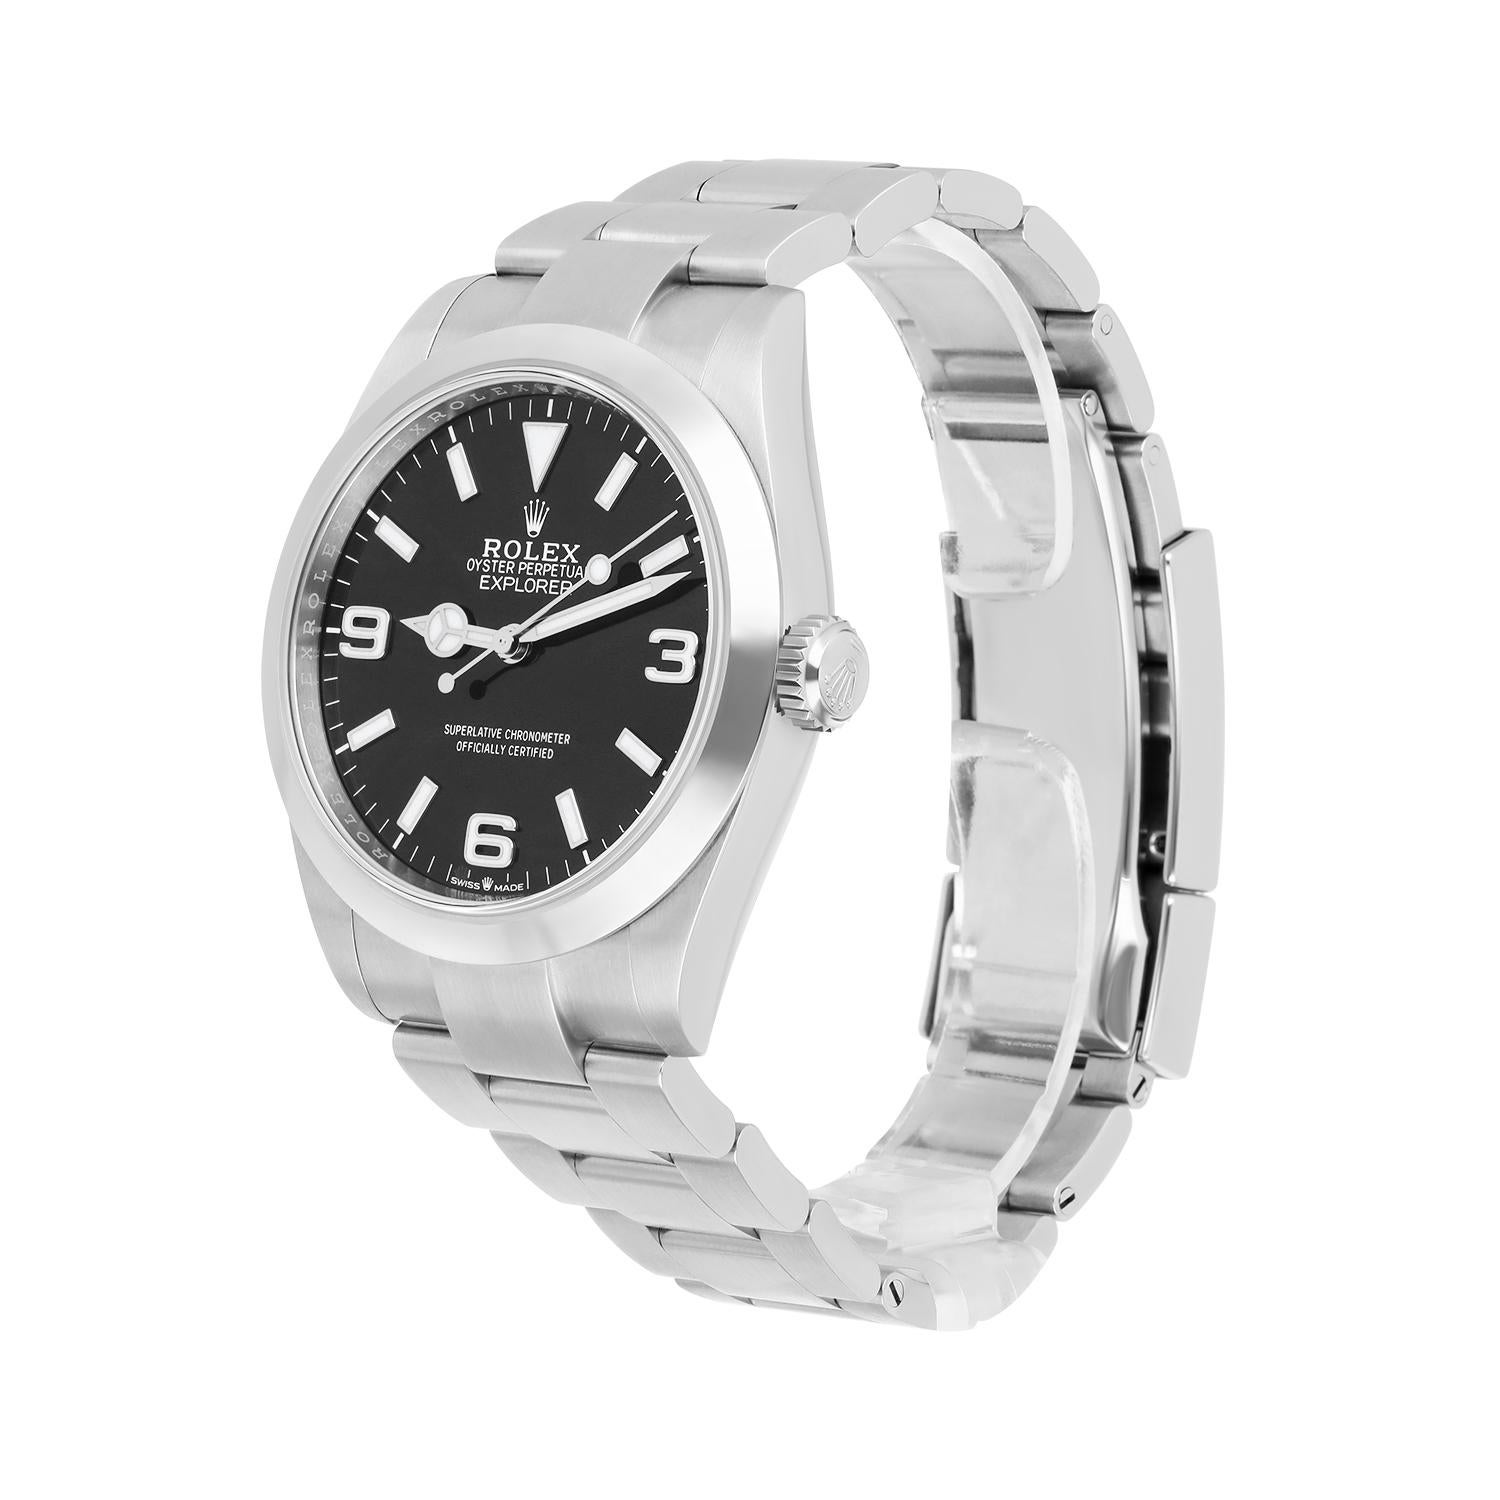 Rolex Explorer Automatic Chronometer Black Dial Men's Watch 224270 Unworn For Sale 1